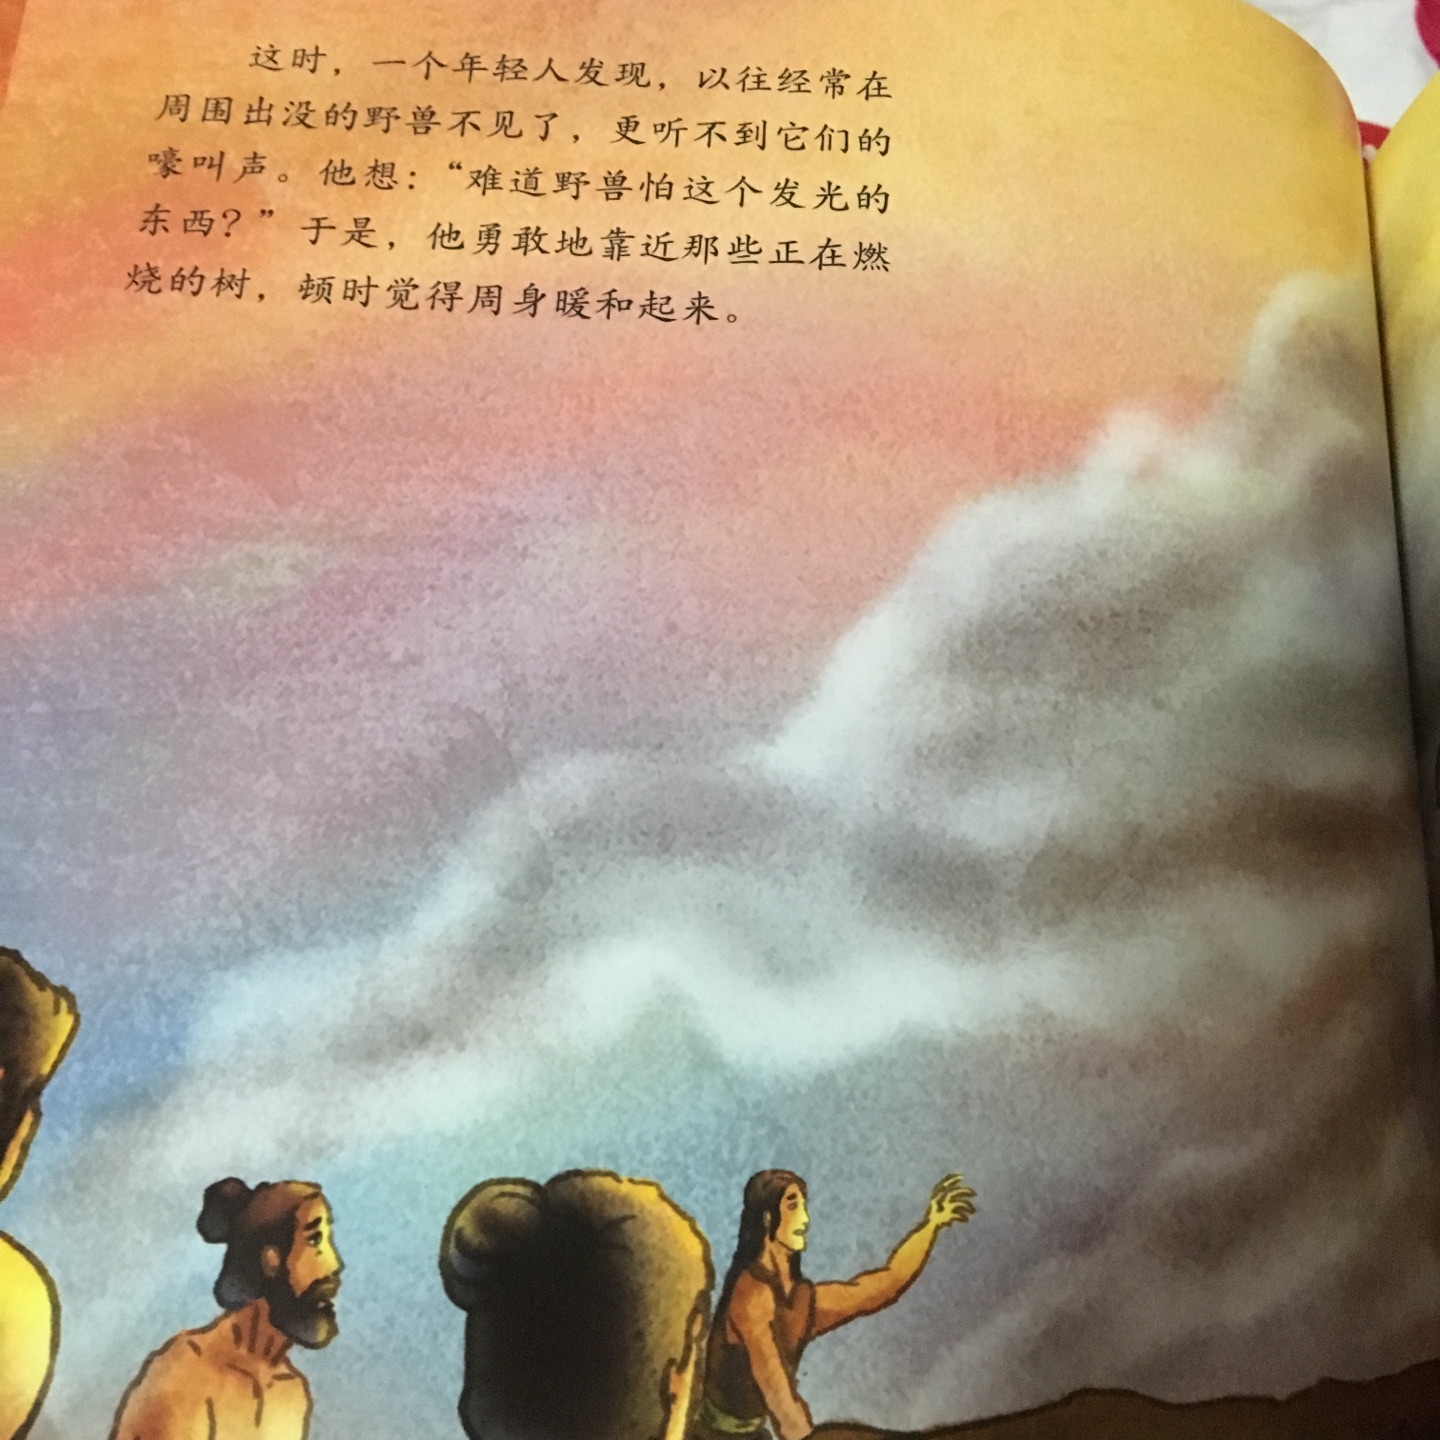 中国古典神话故事本本经典，孩子拿到书就说都要买，书的内容表达简洁，图画色彩鲜艳，孩子激发孩子的阅读兴趣。绘本阅读用孩子最适合的方式了解神话故事，现在的孩子真幸福！